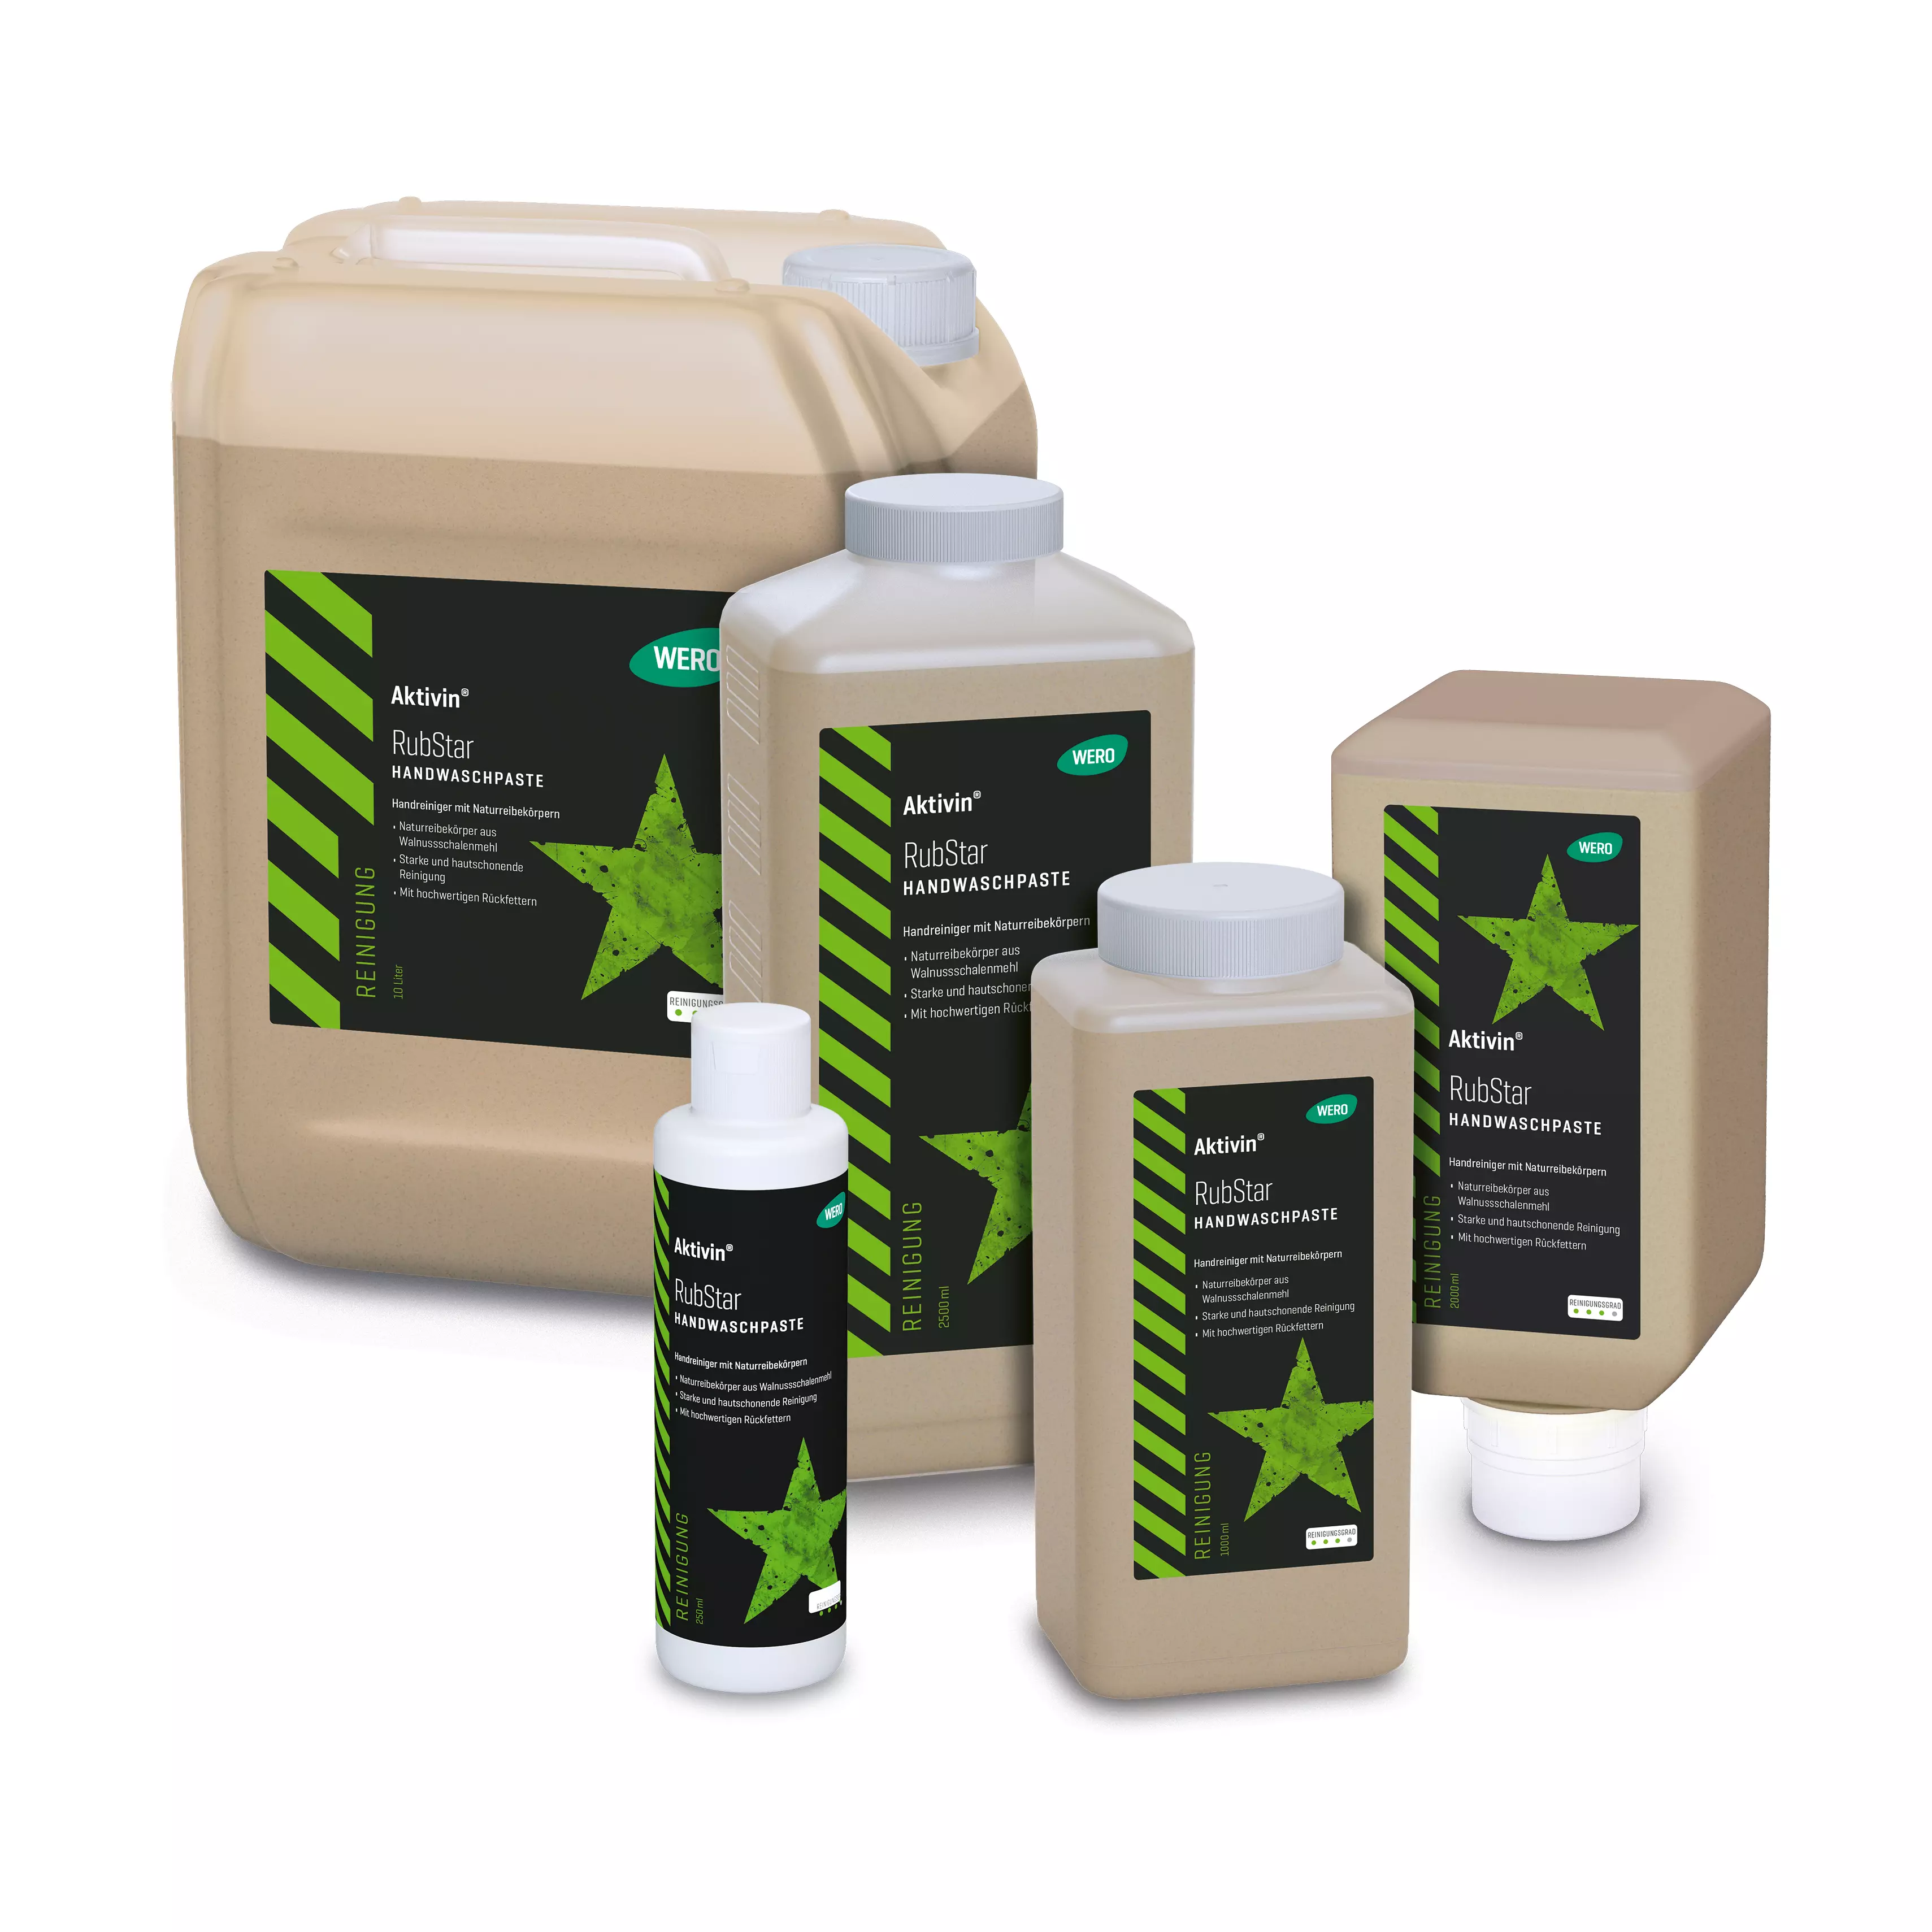 Skin cleansing Aktivin® RubStar - Euro bottle, 1,000 ml